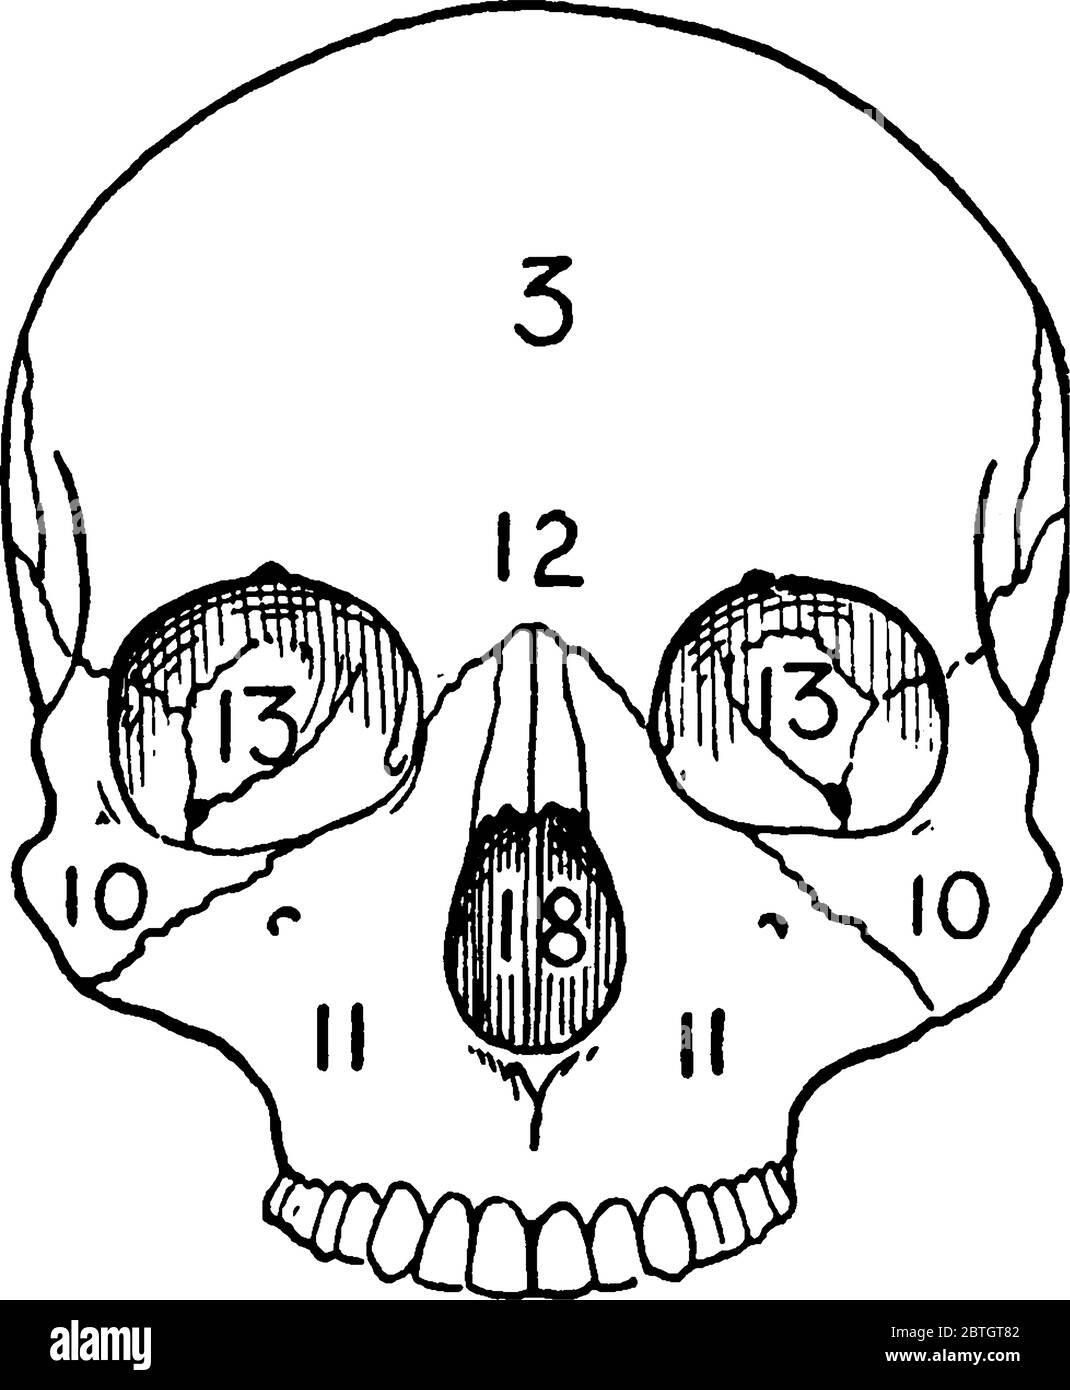 La vista frontal de un cráneo adulto, una estructura ósea que sirve como  una cavidad protectora para el cerebro con sus partes etiquetadas, dibujo  de línea vintage o e Imagen Vector de